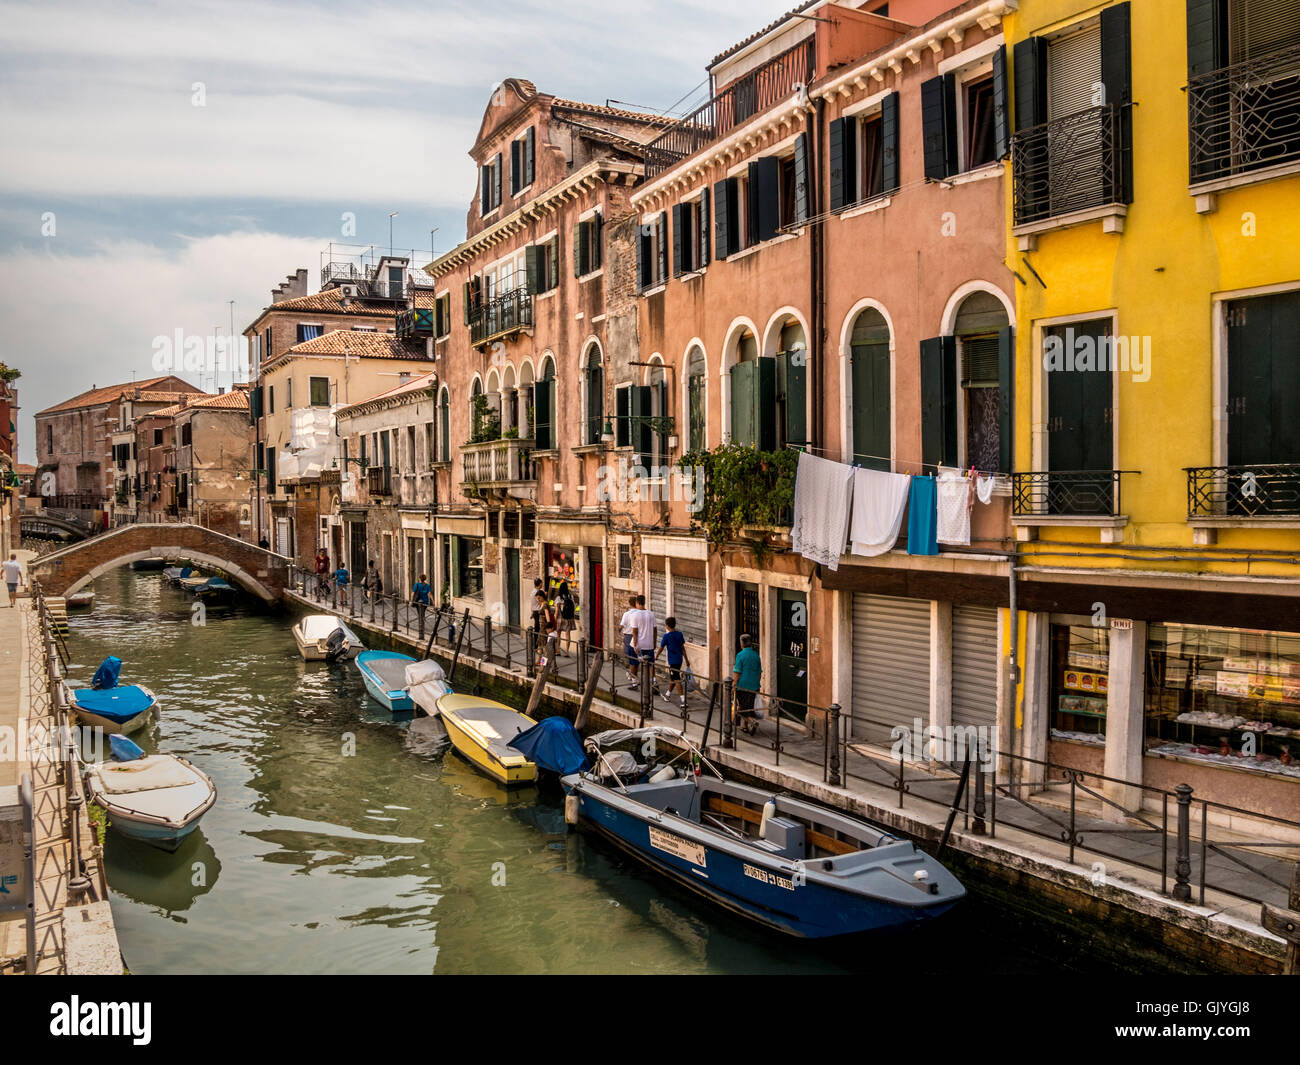 Barche ormeggiate su uno stretto canale con edifici tradizionali su entrambi i lati, nel quartiere di Castello di Venezia, Italia. Foto Stock